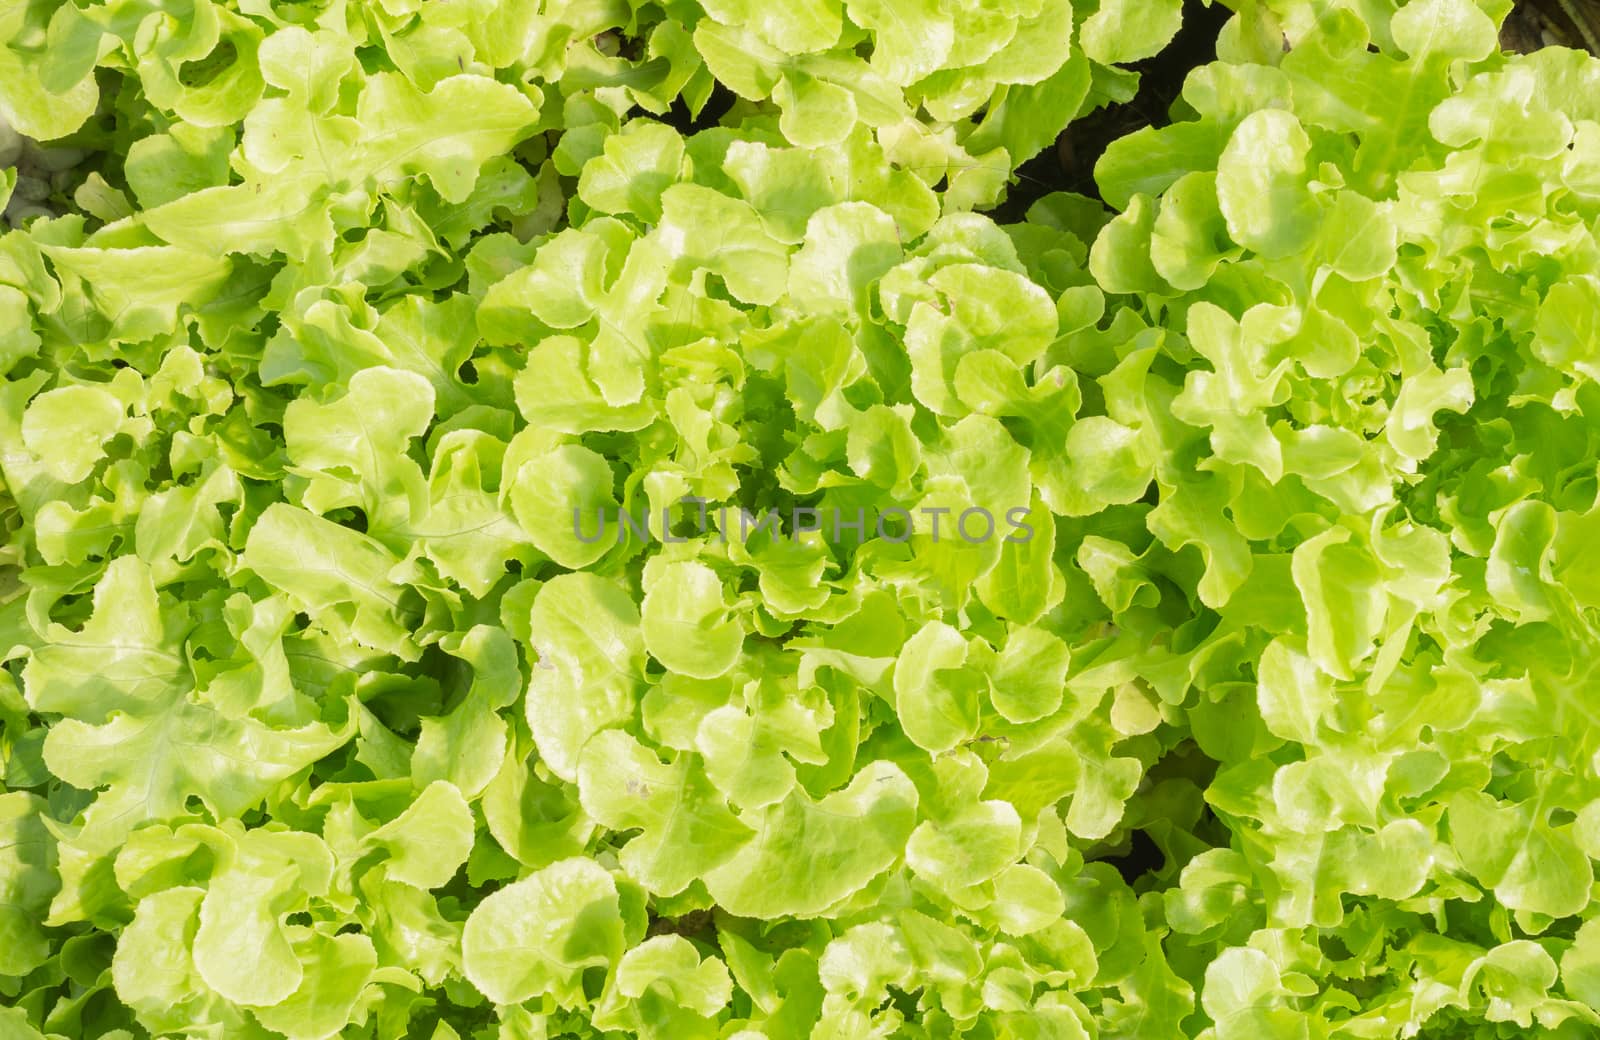 Green oak lettuce or green lettuce for diet health. Fresh green oak lettuce or green lettuce for vegan or vegetarian food. Hydroponic green oak 
lettuce or green lettuce.